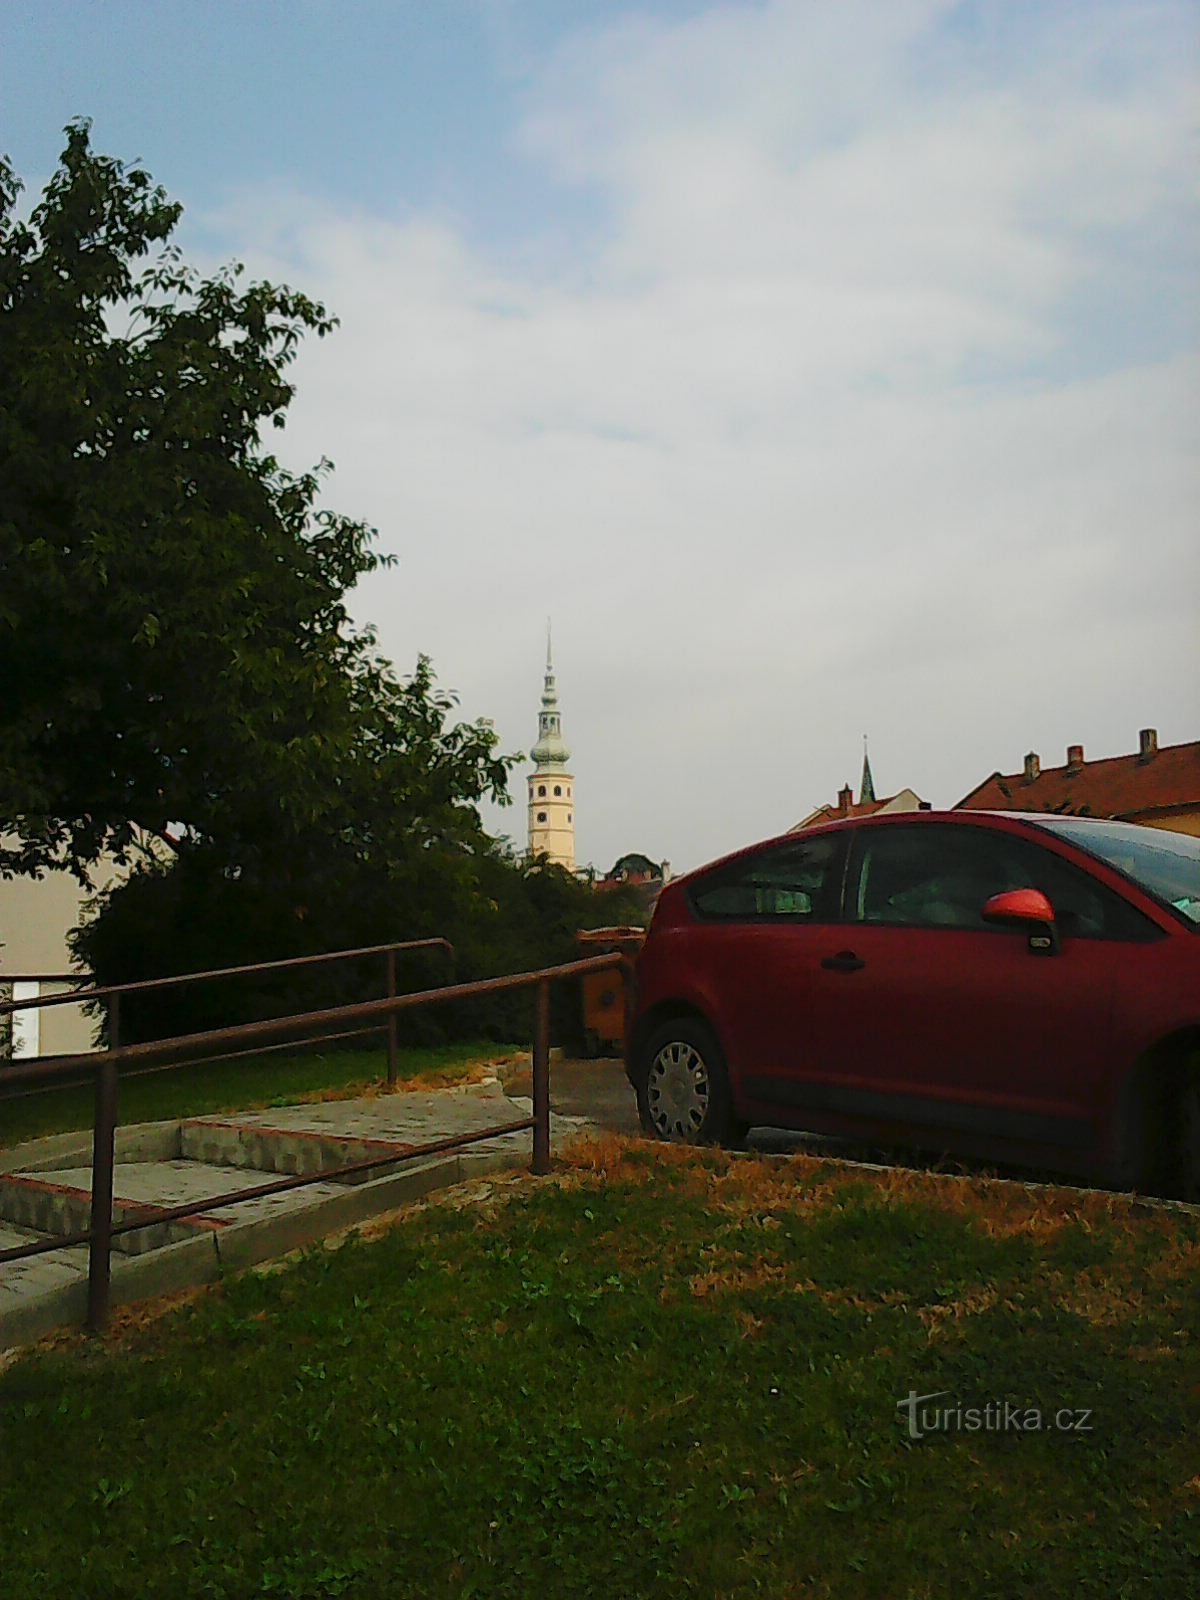 La torre del castello di Tovačovské visibile da lontano - il mio principale punto di riferimento :)